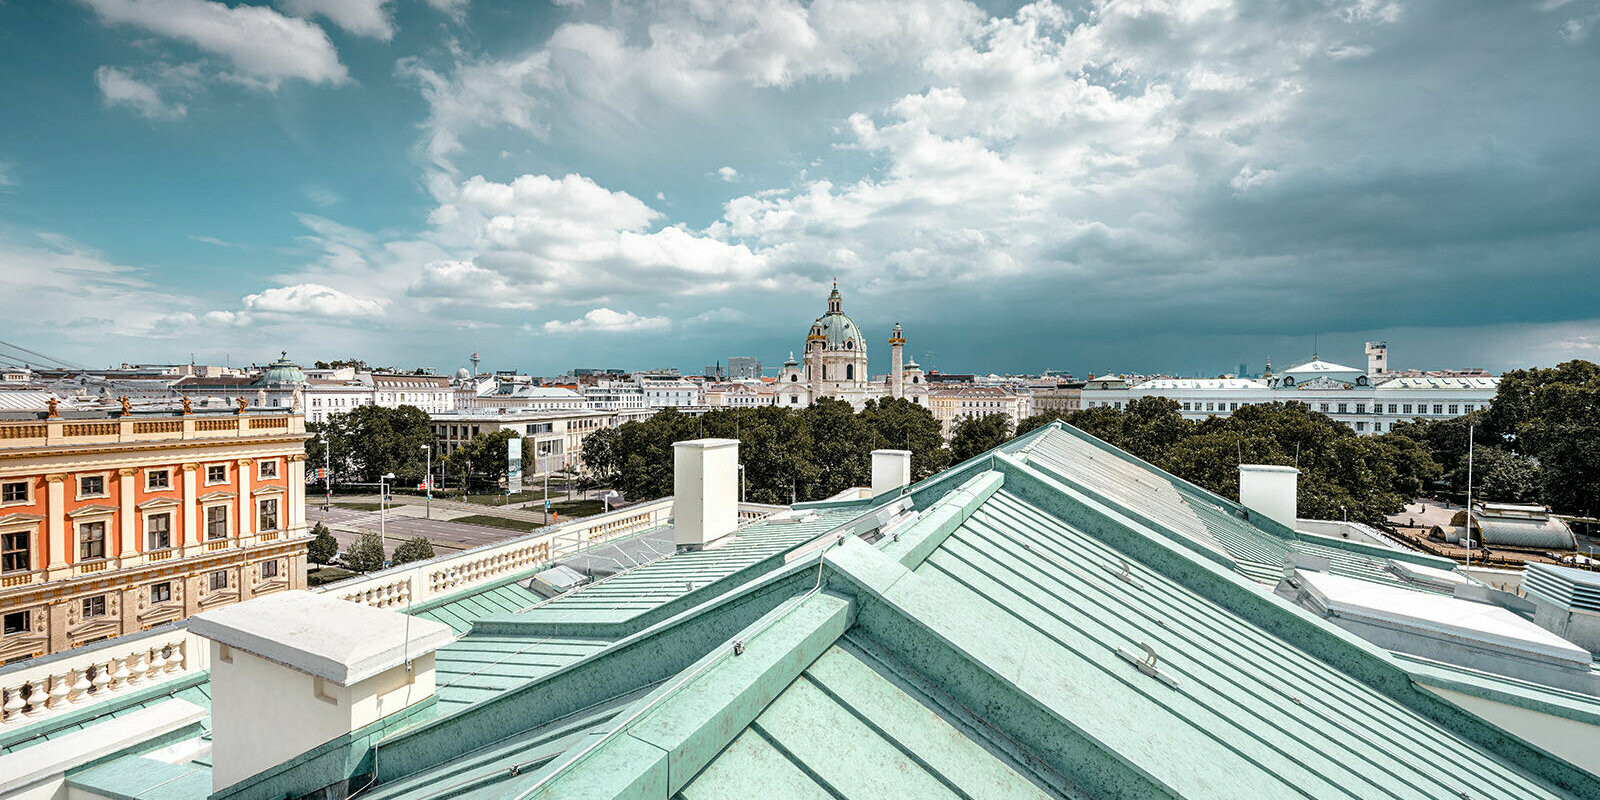 Pohled přes střechu Domu umělců na vídeňském Karlsplatz.